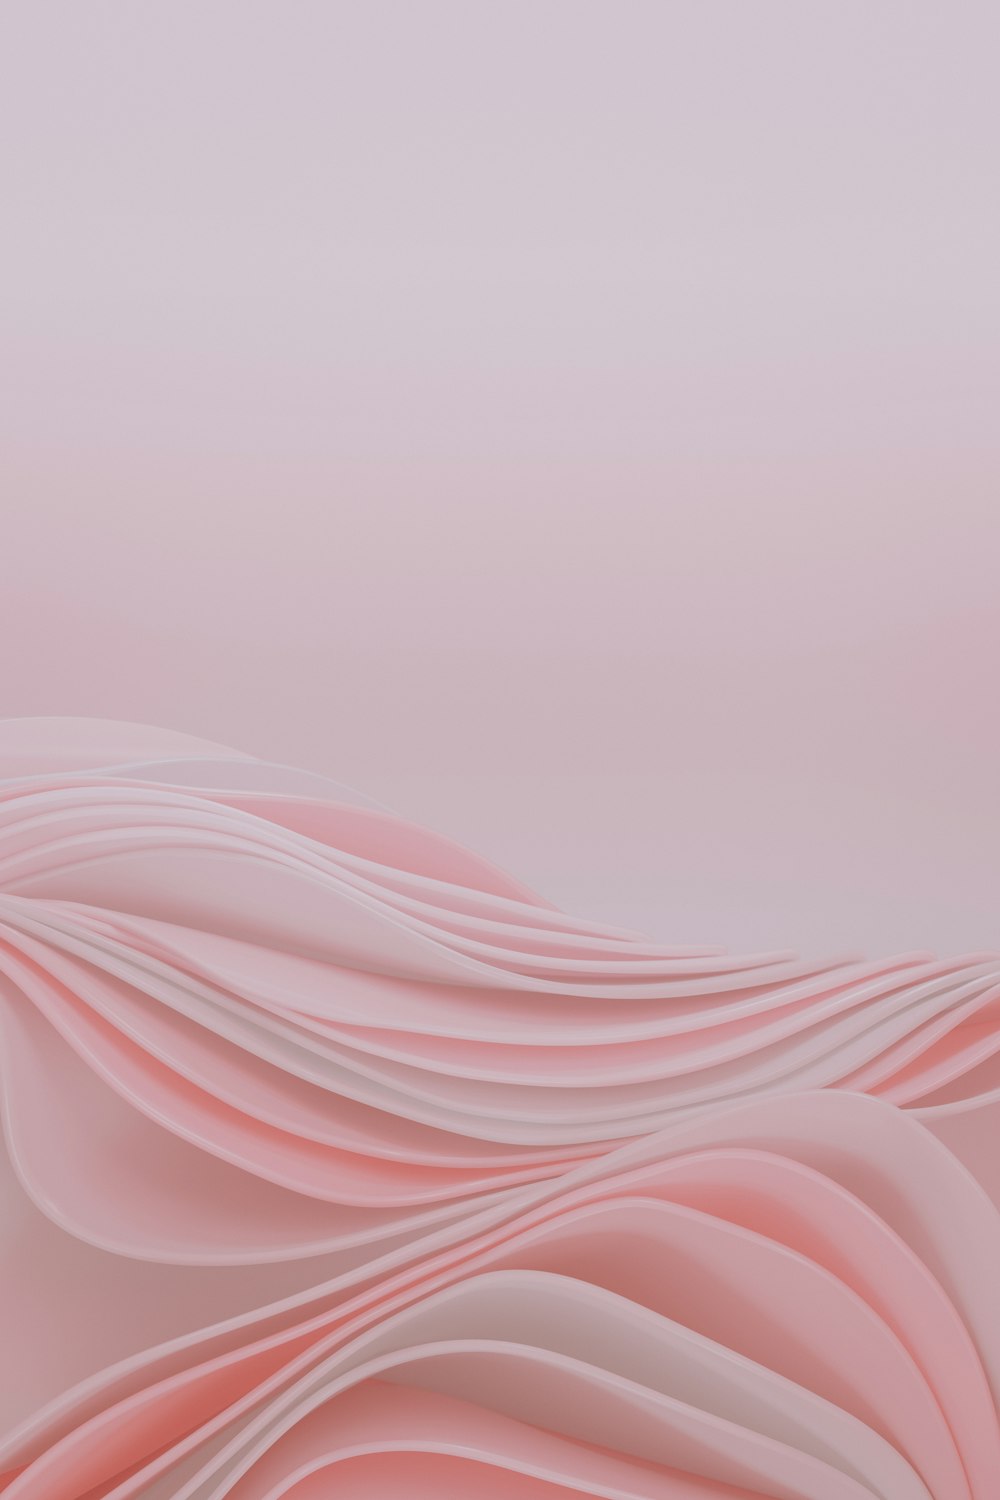 um fundo rosa abstrato com linhas onduladas